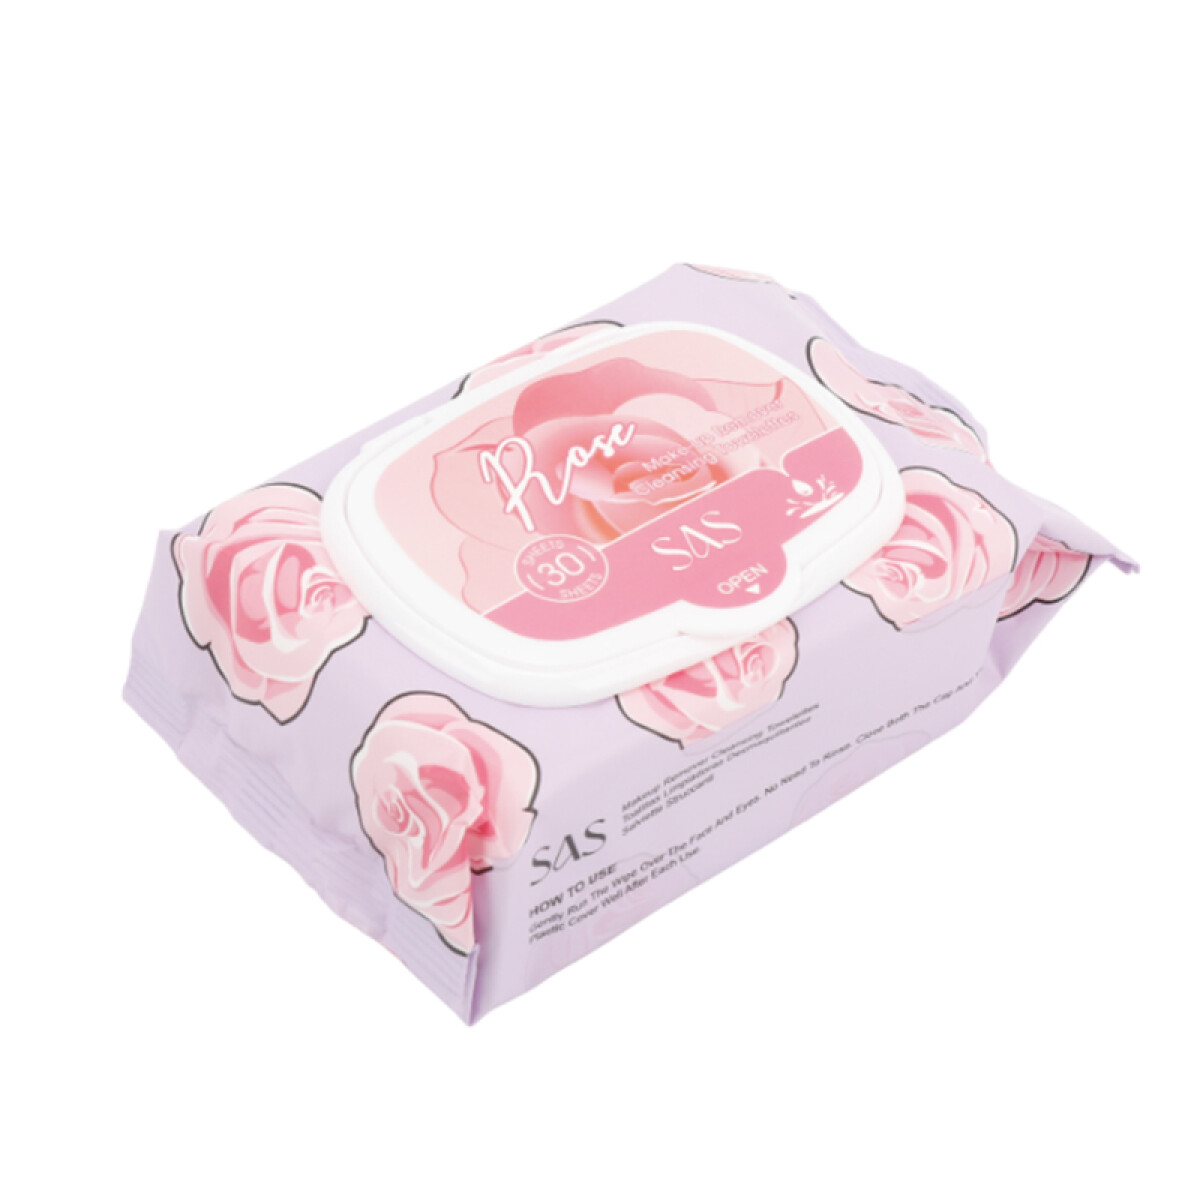 SAS Toallitas desmaquillantes fragancia de rosas x30 